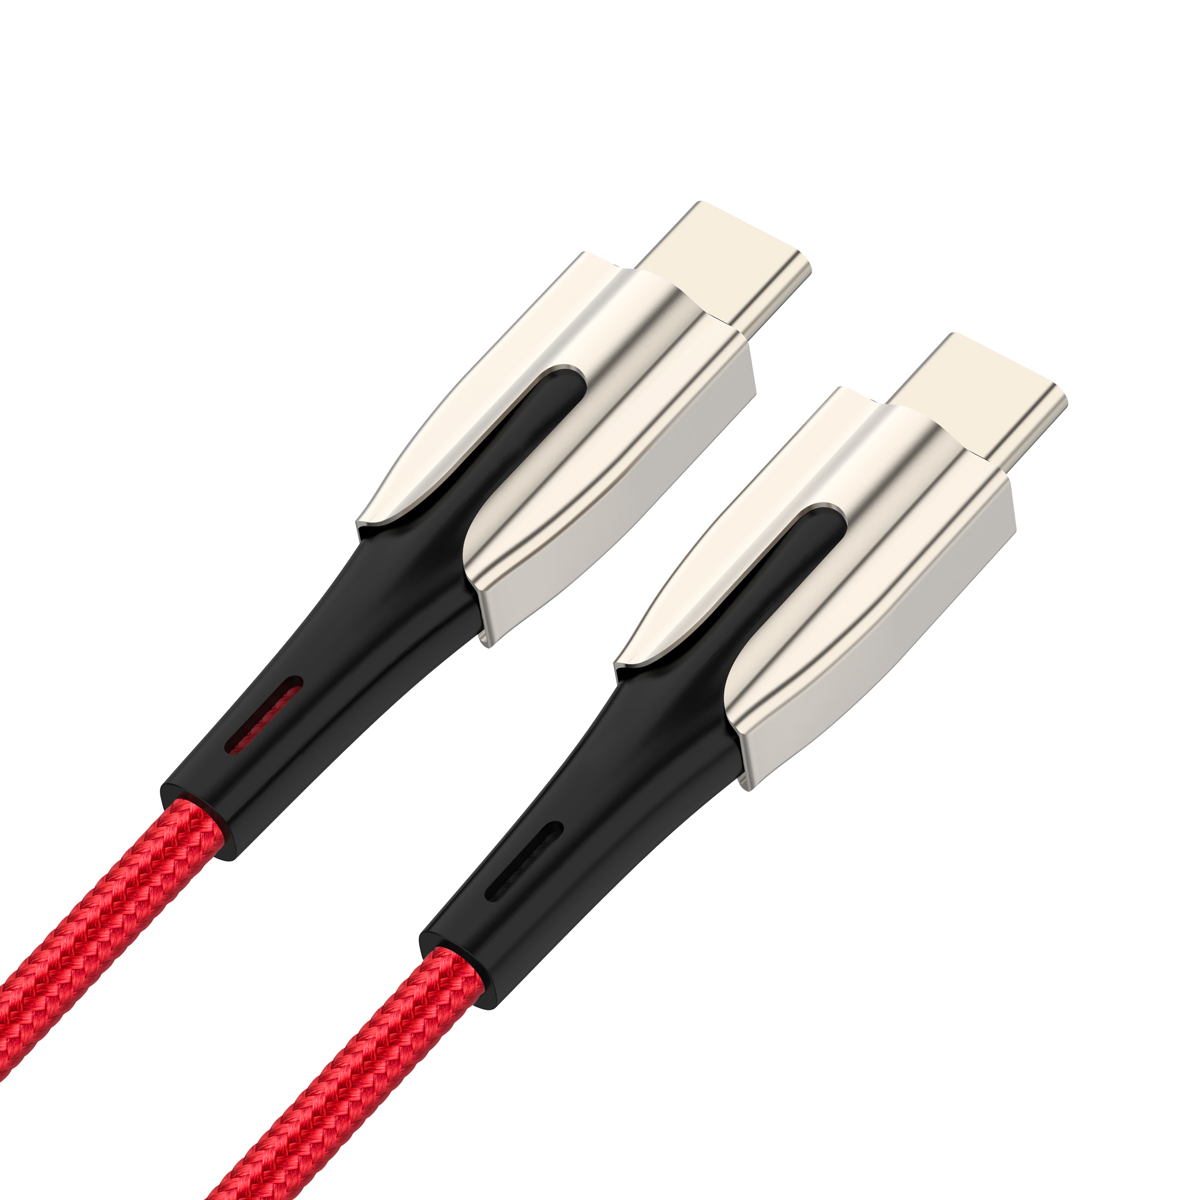 热销用于iPhone11 C型充电器电缆的18W快速充电USB电缆PD数据线